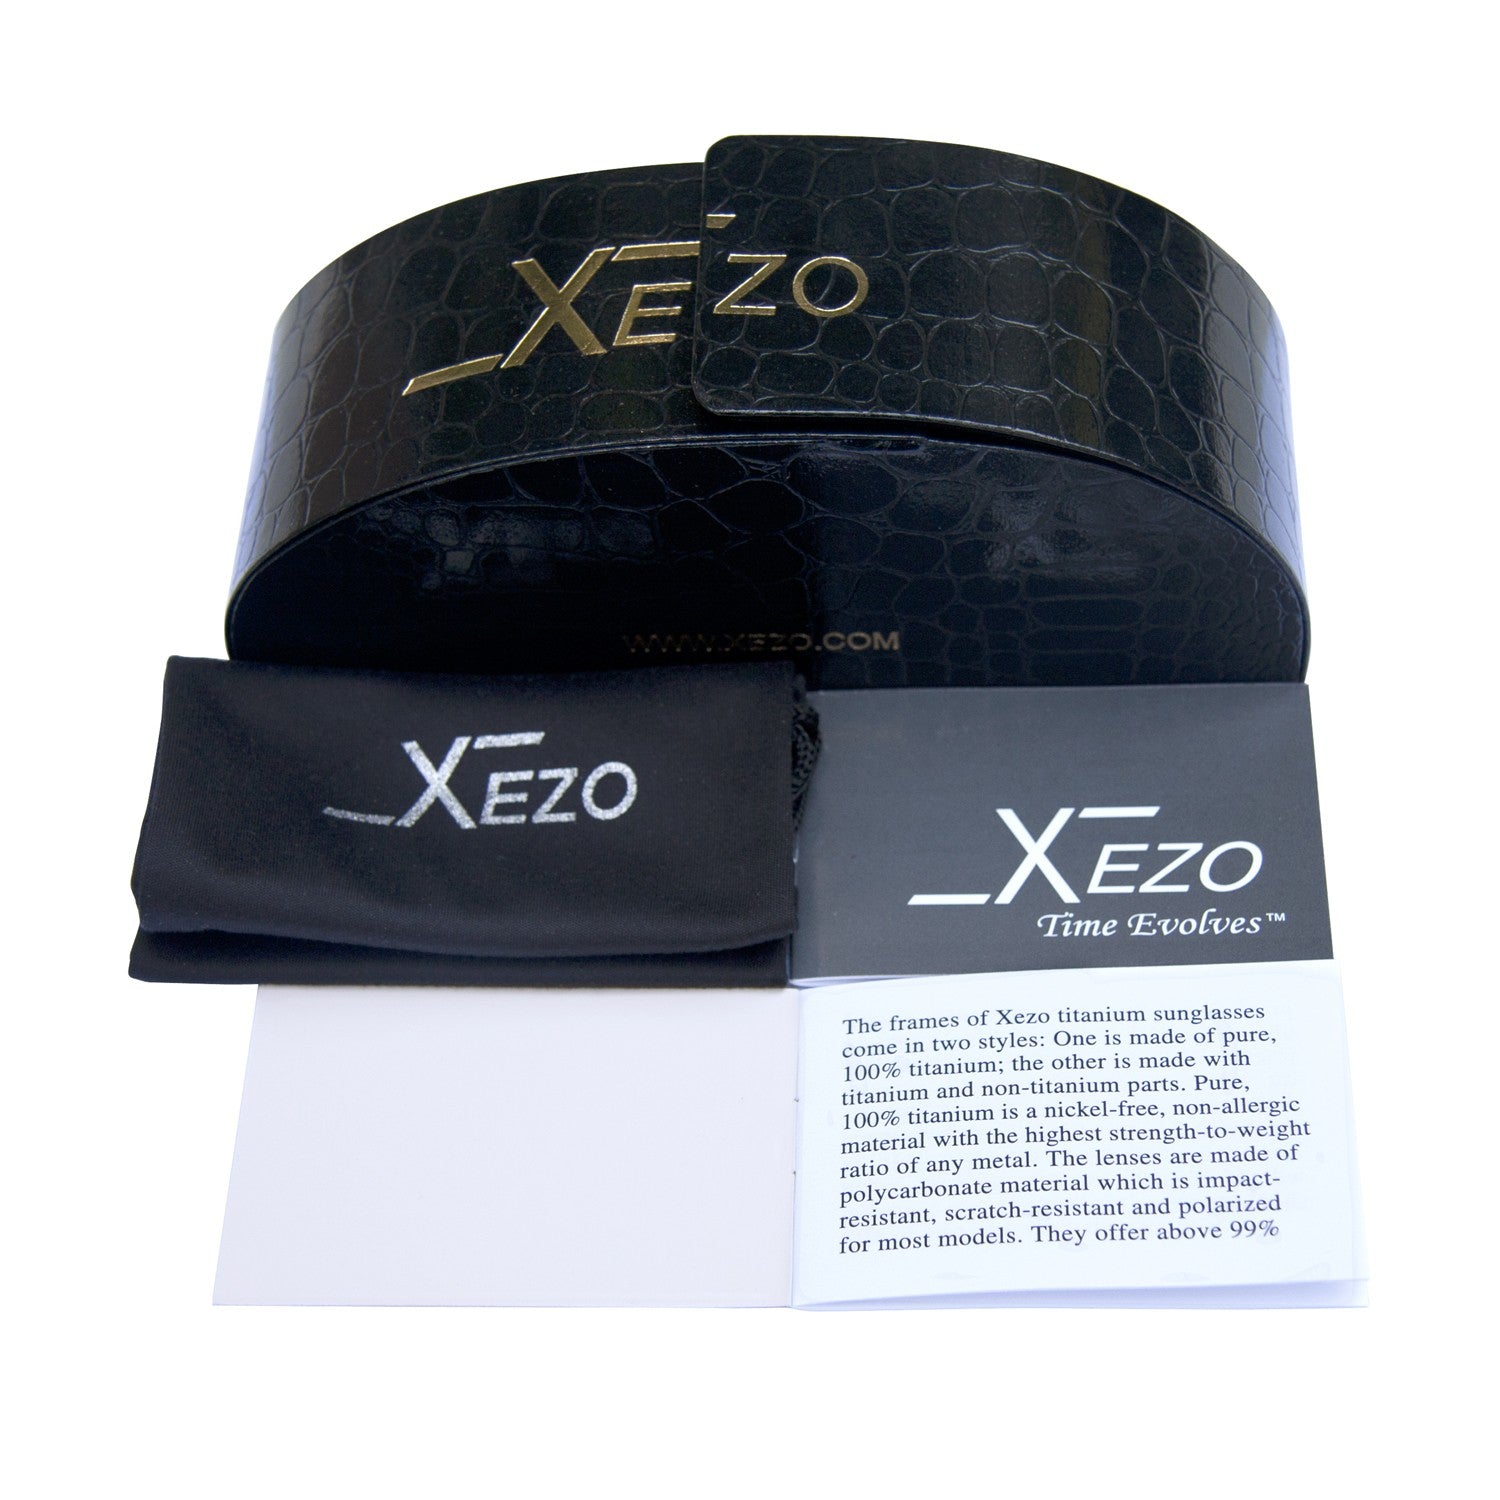 Xezo - Black gift box, black bag, and certificate of the Incognito 1400 B sunglasses